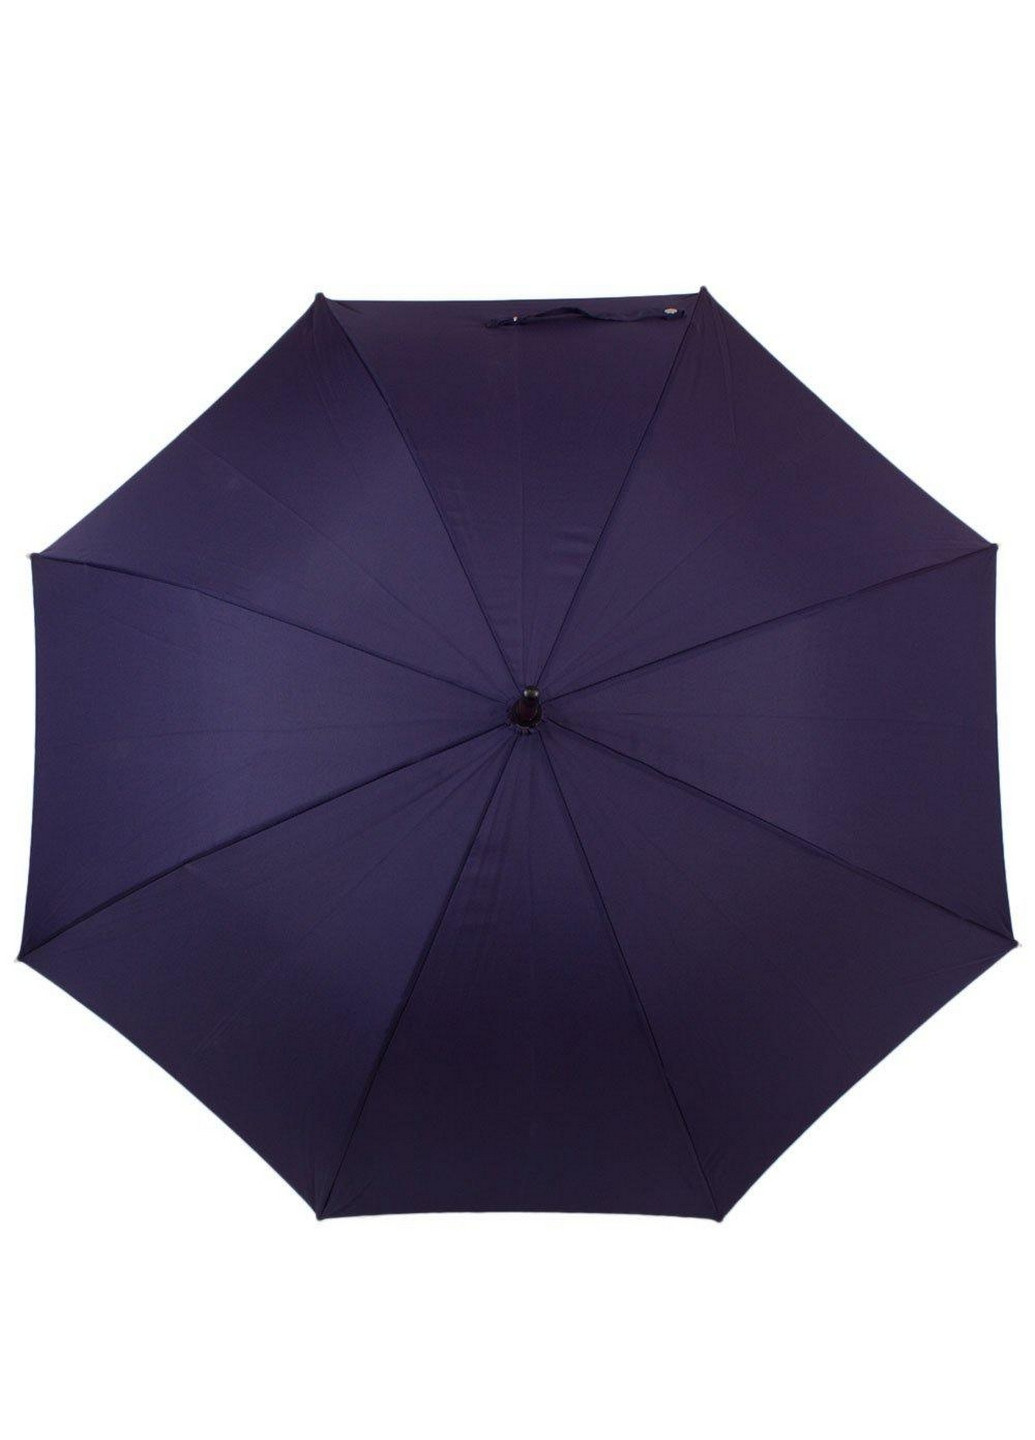 Мужской зонт-трость механический 100 см Fulton (260330452)